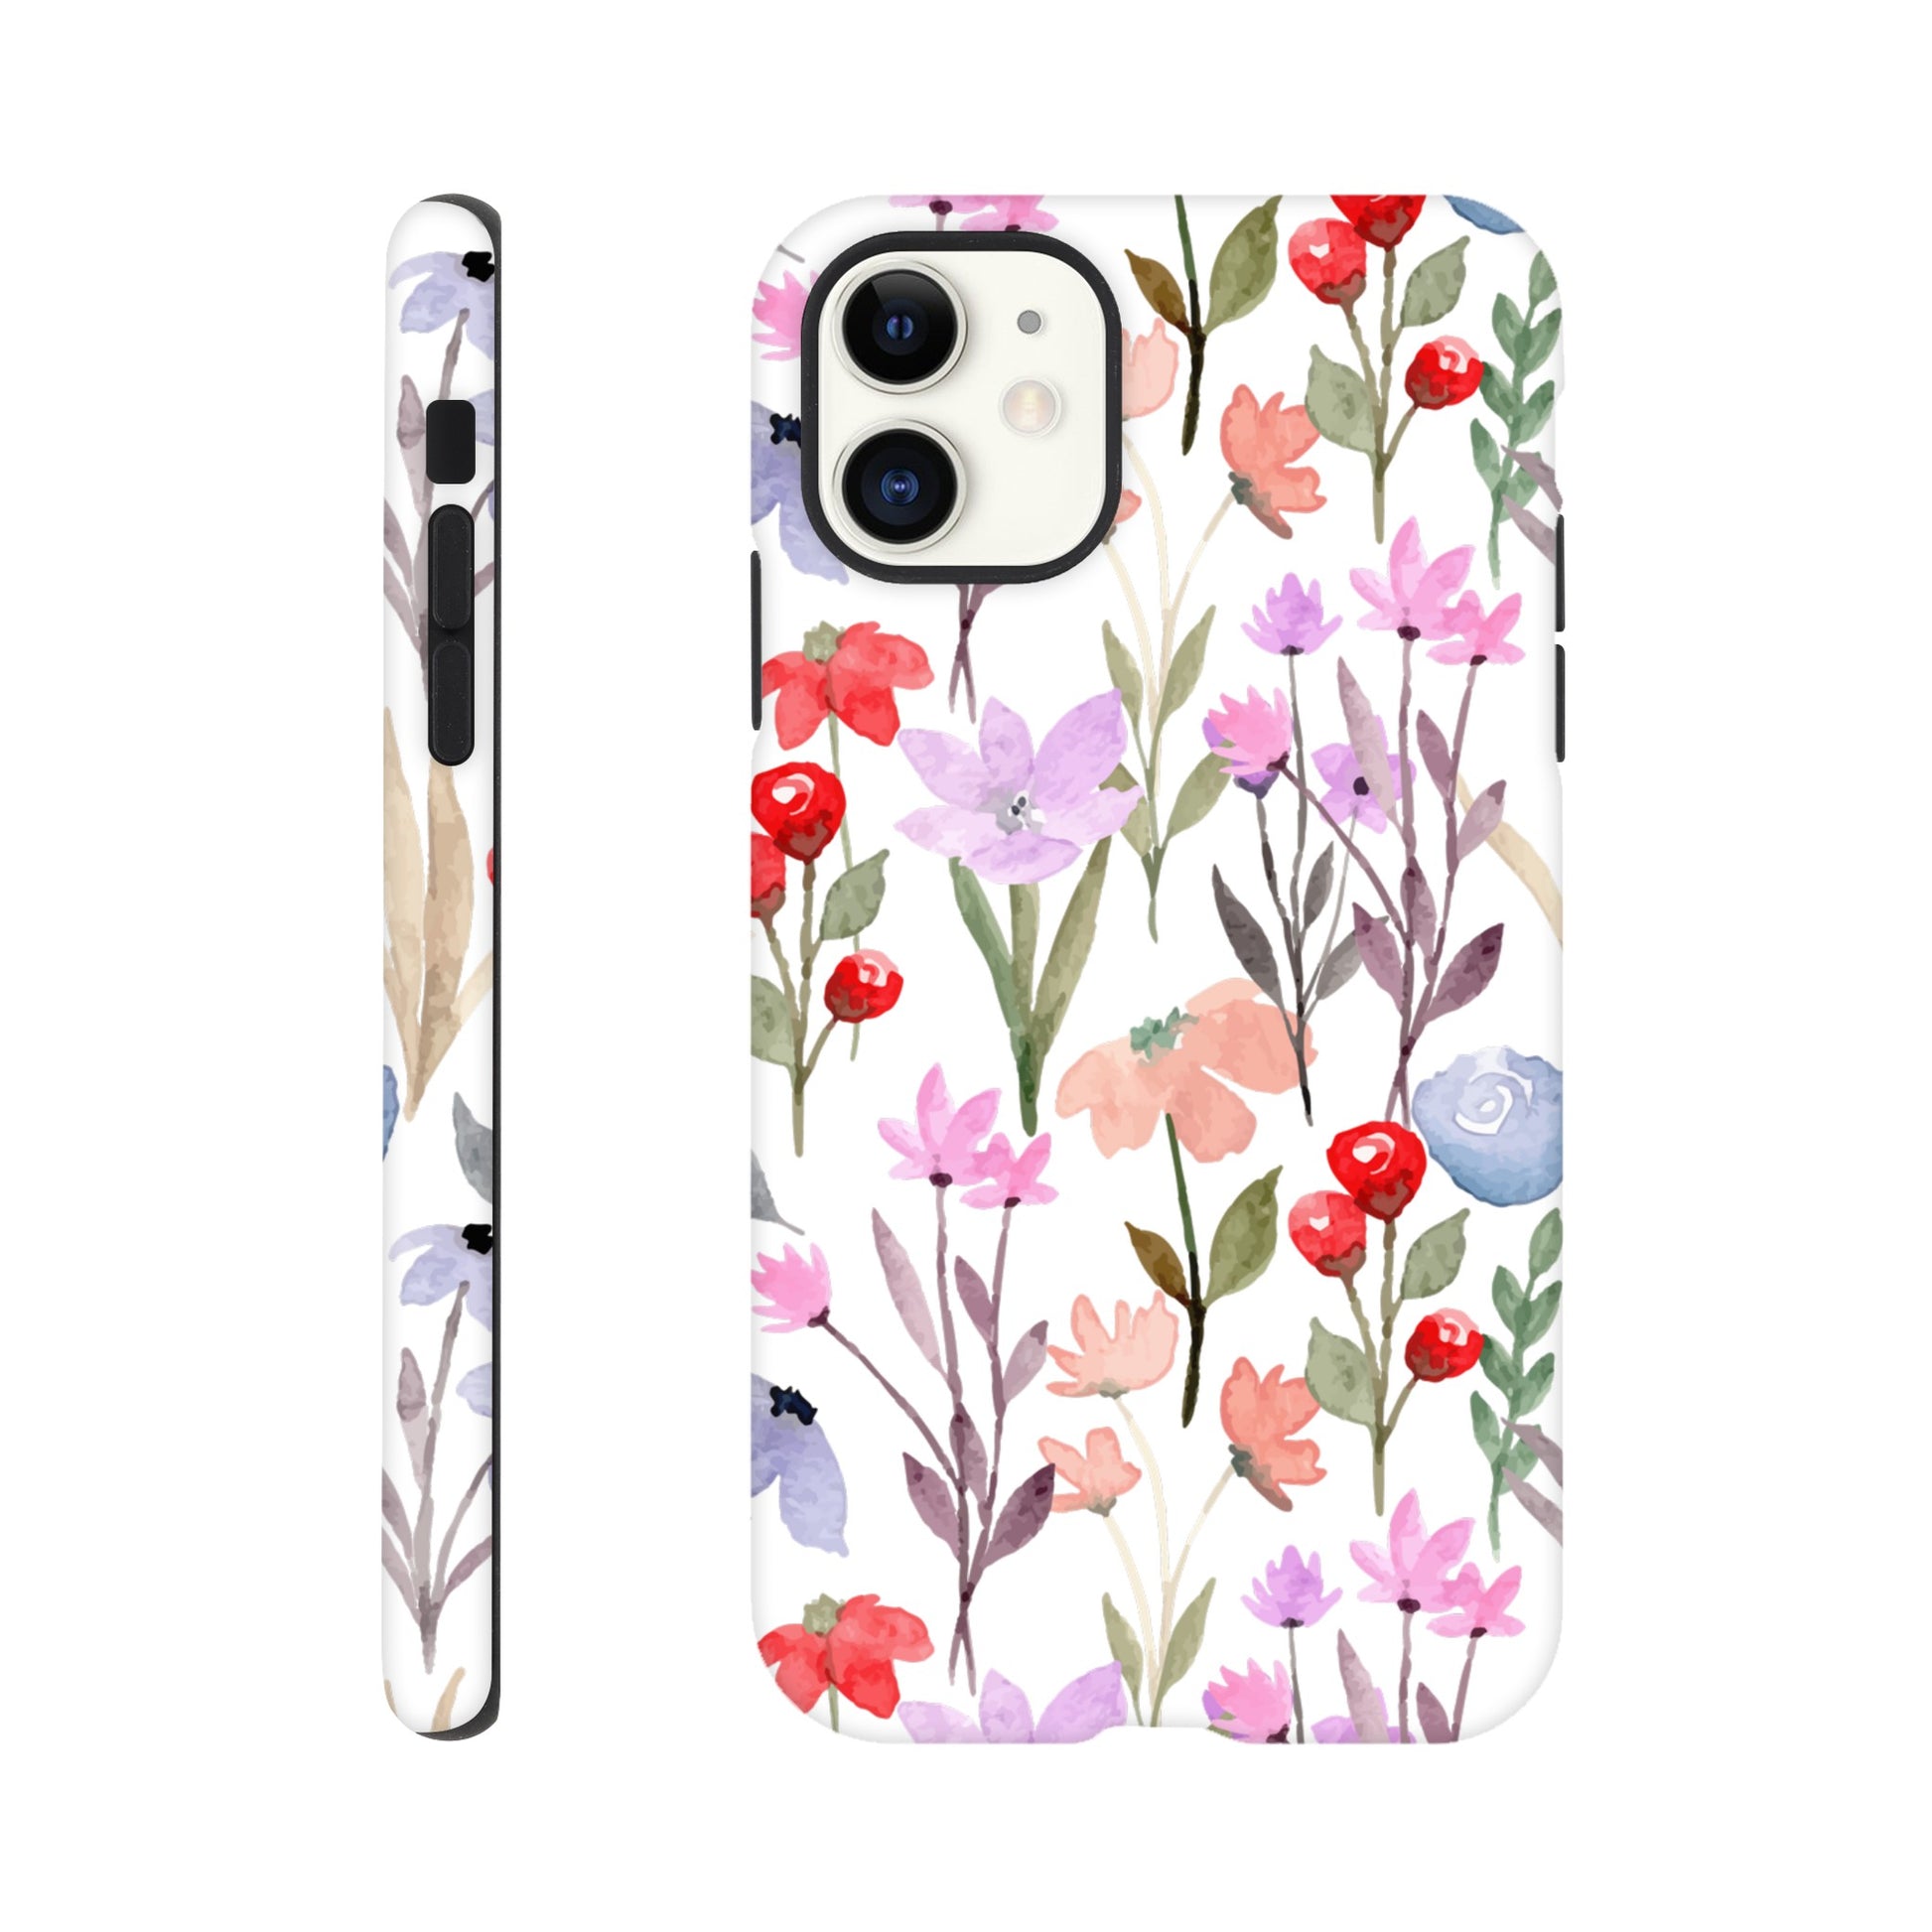 Watercolour Flowers - Phone Tough Case iPhone 11 Phone Case Plants